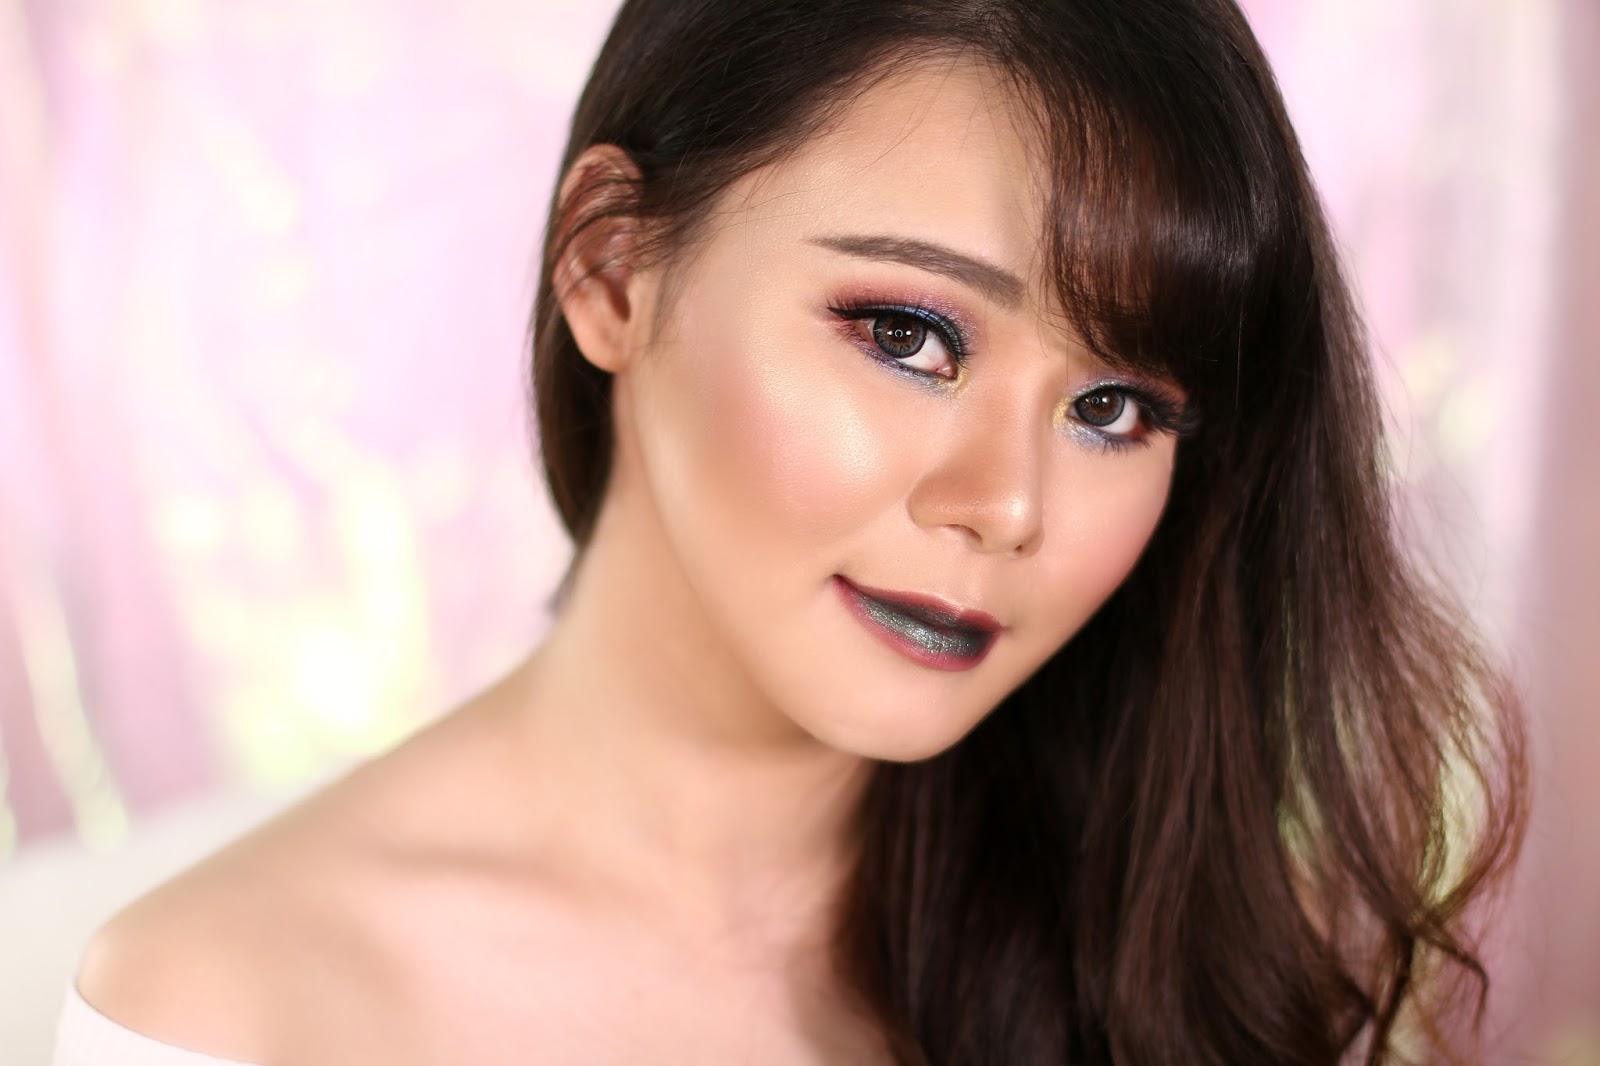 makeup, makeup tutorial, tutorial makeup, glam makeup unicorn makeup, colorful makeup, glam, beauty, jean milka, beauty blogger indonesia